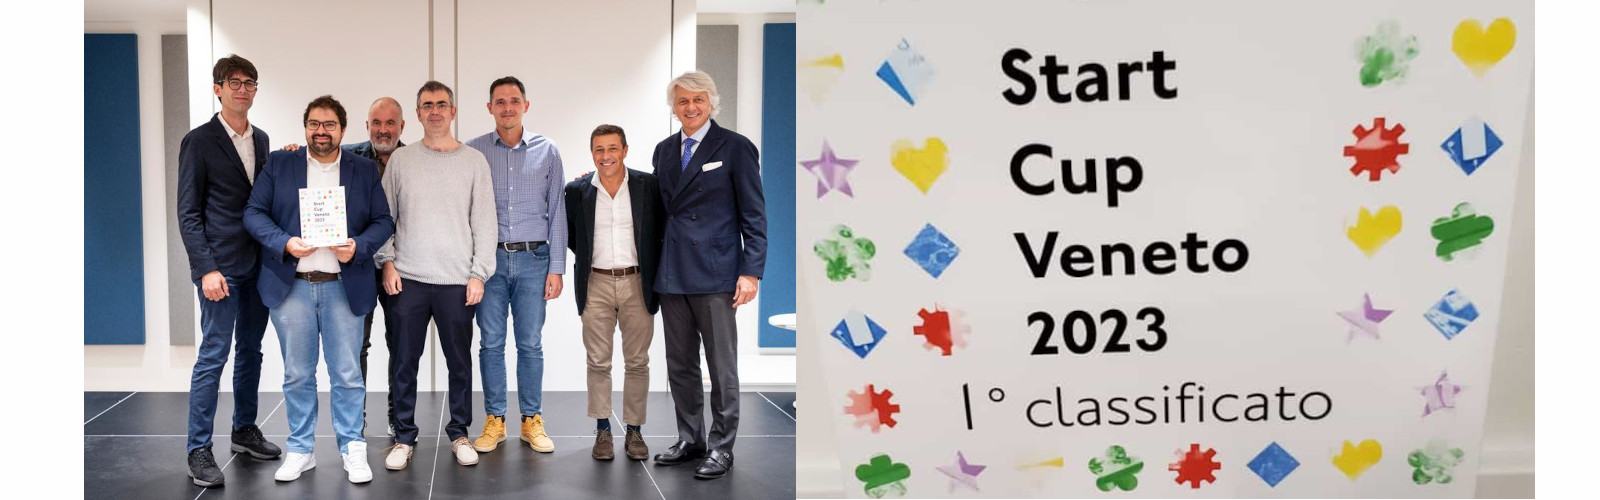 Asteasier dell'Università di Verona vince la Start Cup Veneto